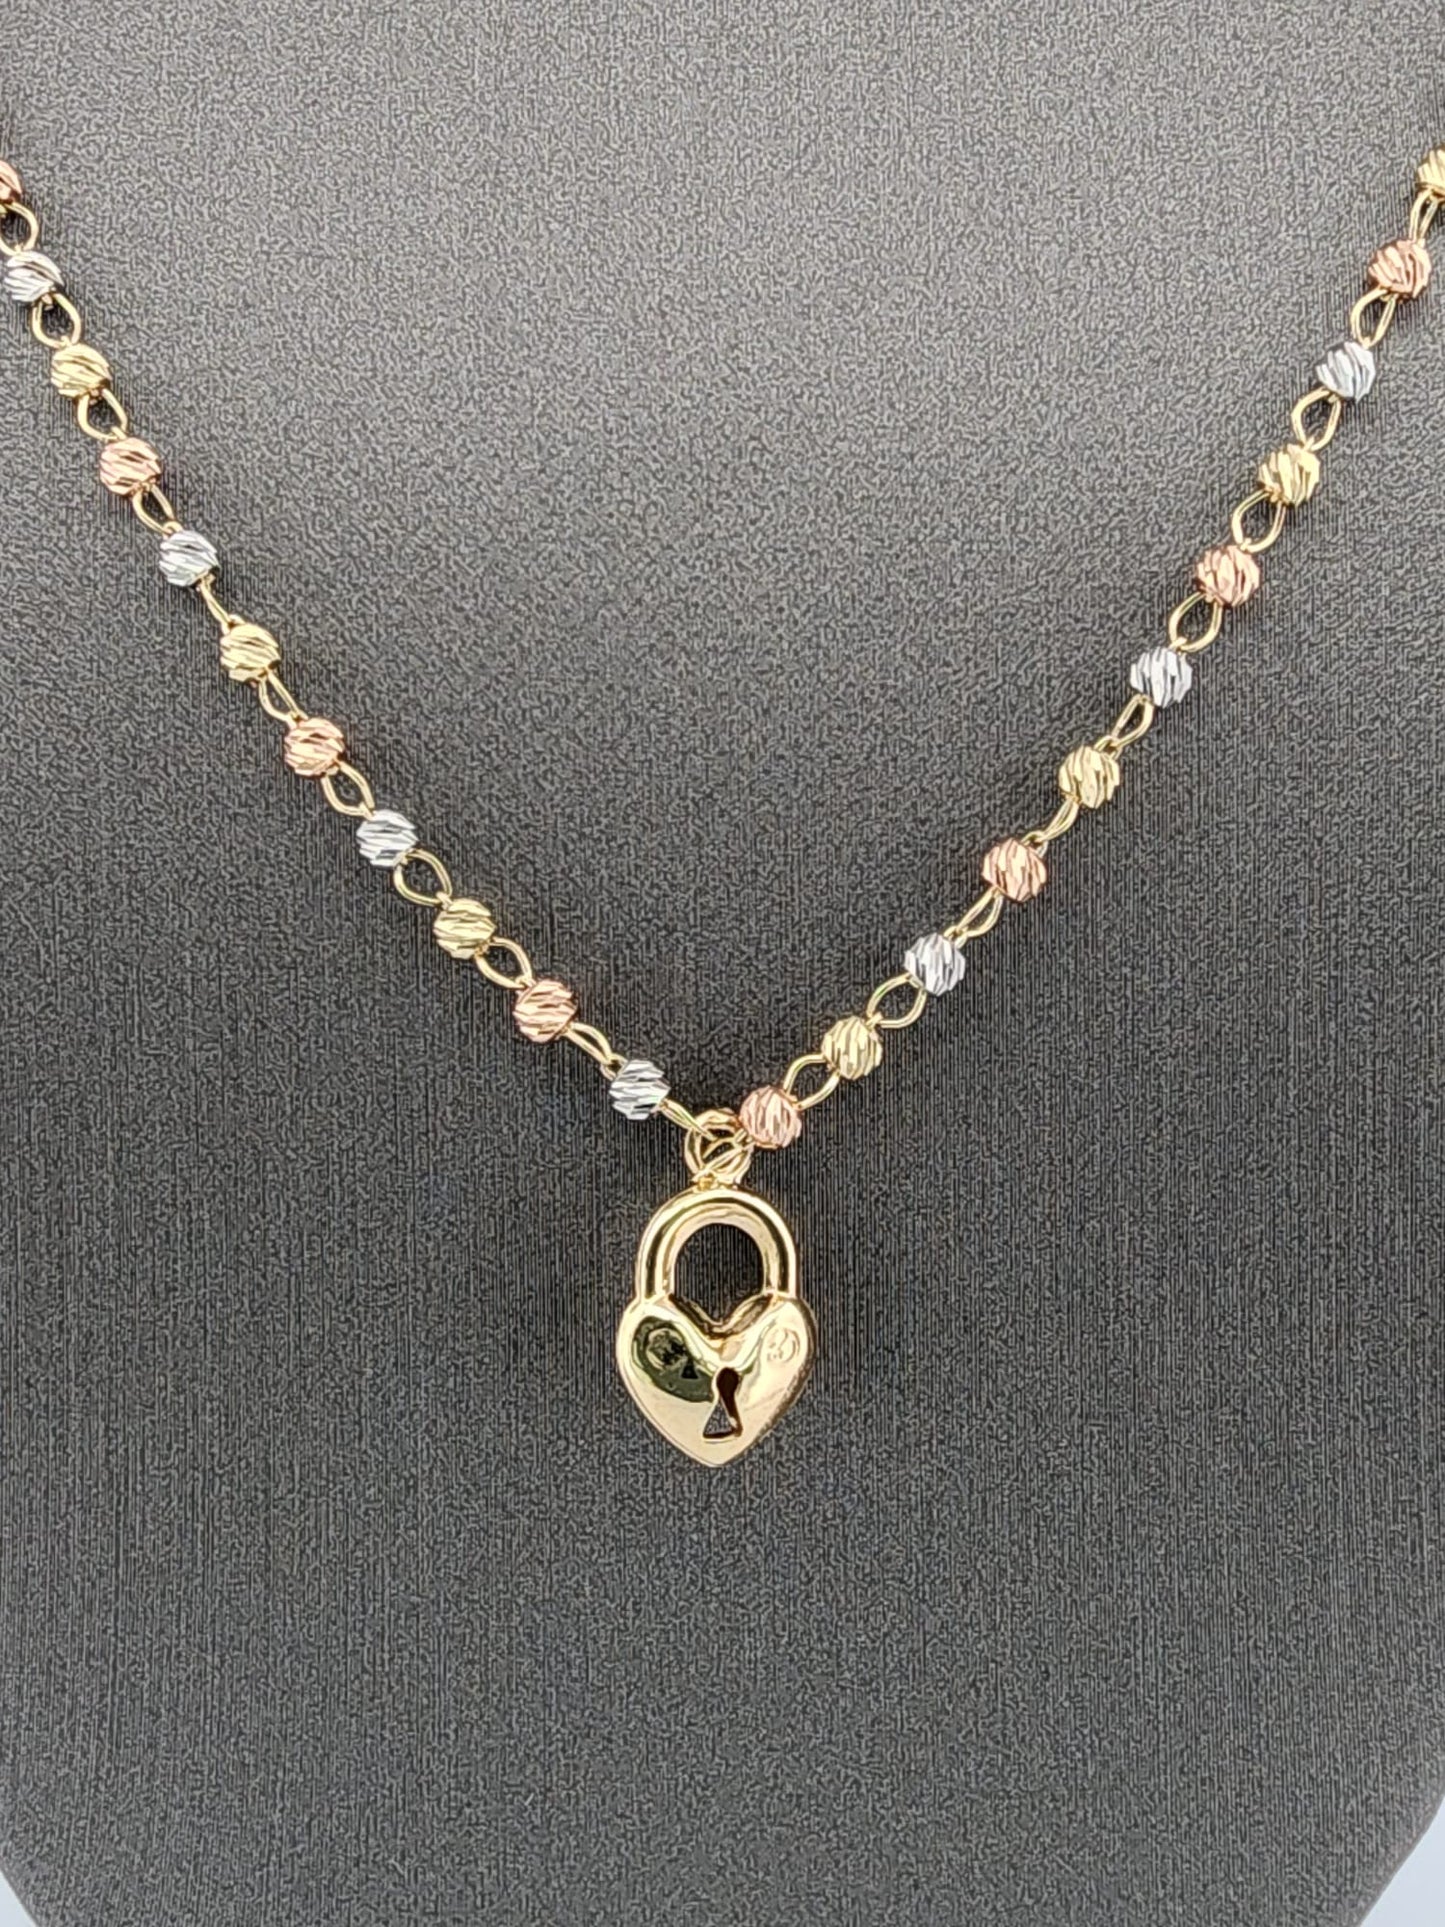 14k Heart Shape Necklace and Bracelet Set 